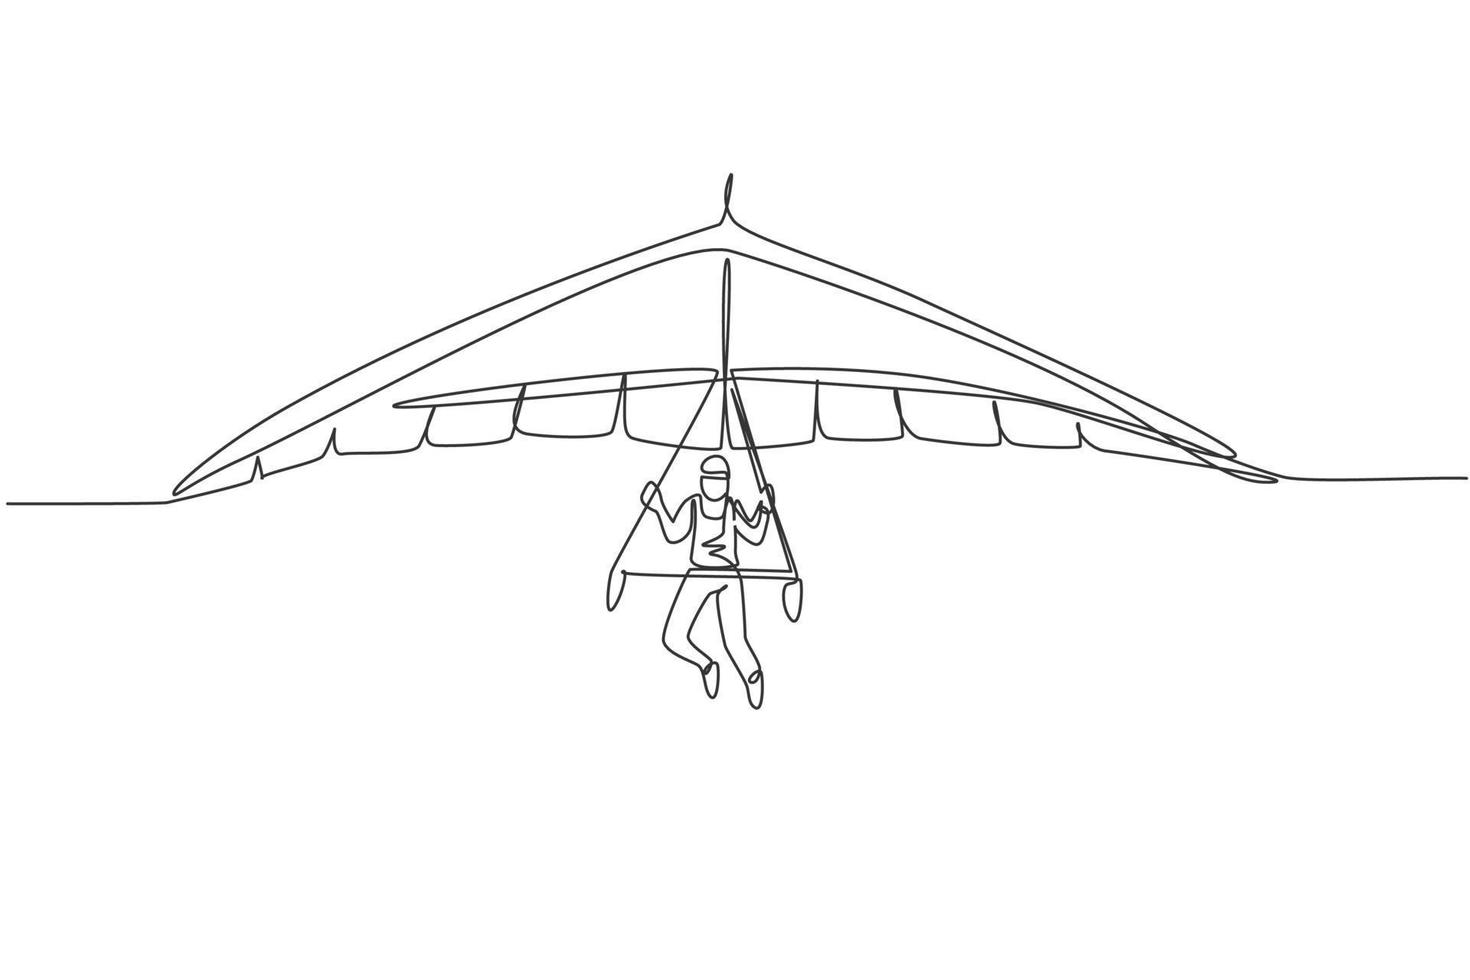 enkele ononderbroken lijntekening van jonge toeristische man vliegen met deltavliegen parachute aan de hemel. extreme vakantie vakantie sport concept. trendy één lijn tekenen ontwerp grafische vectorillustratie vector